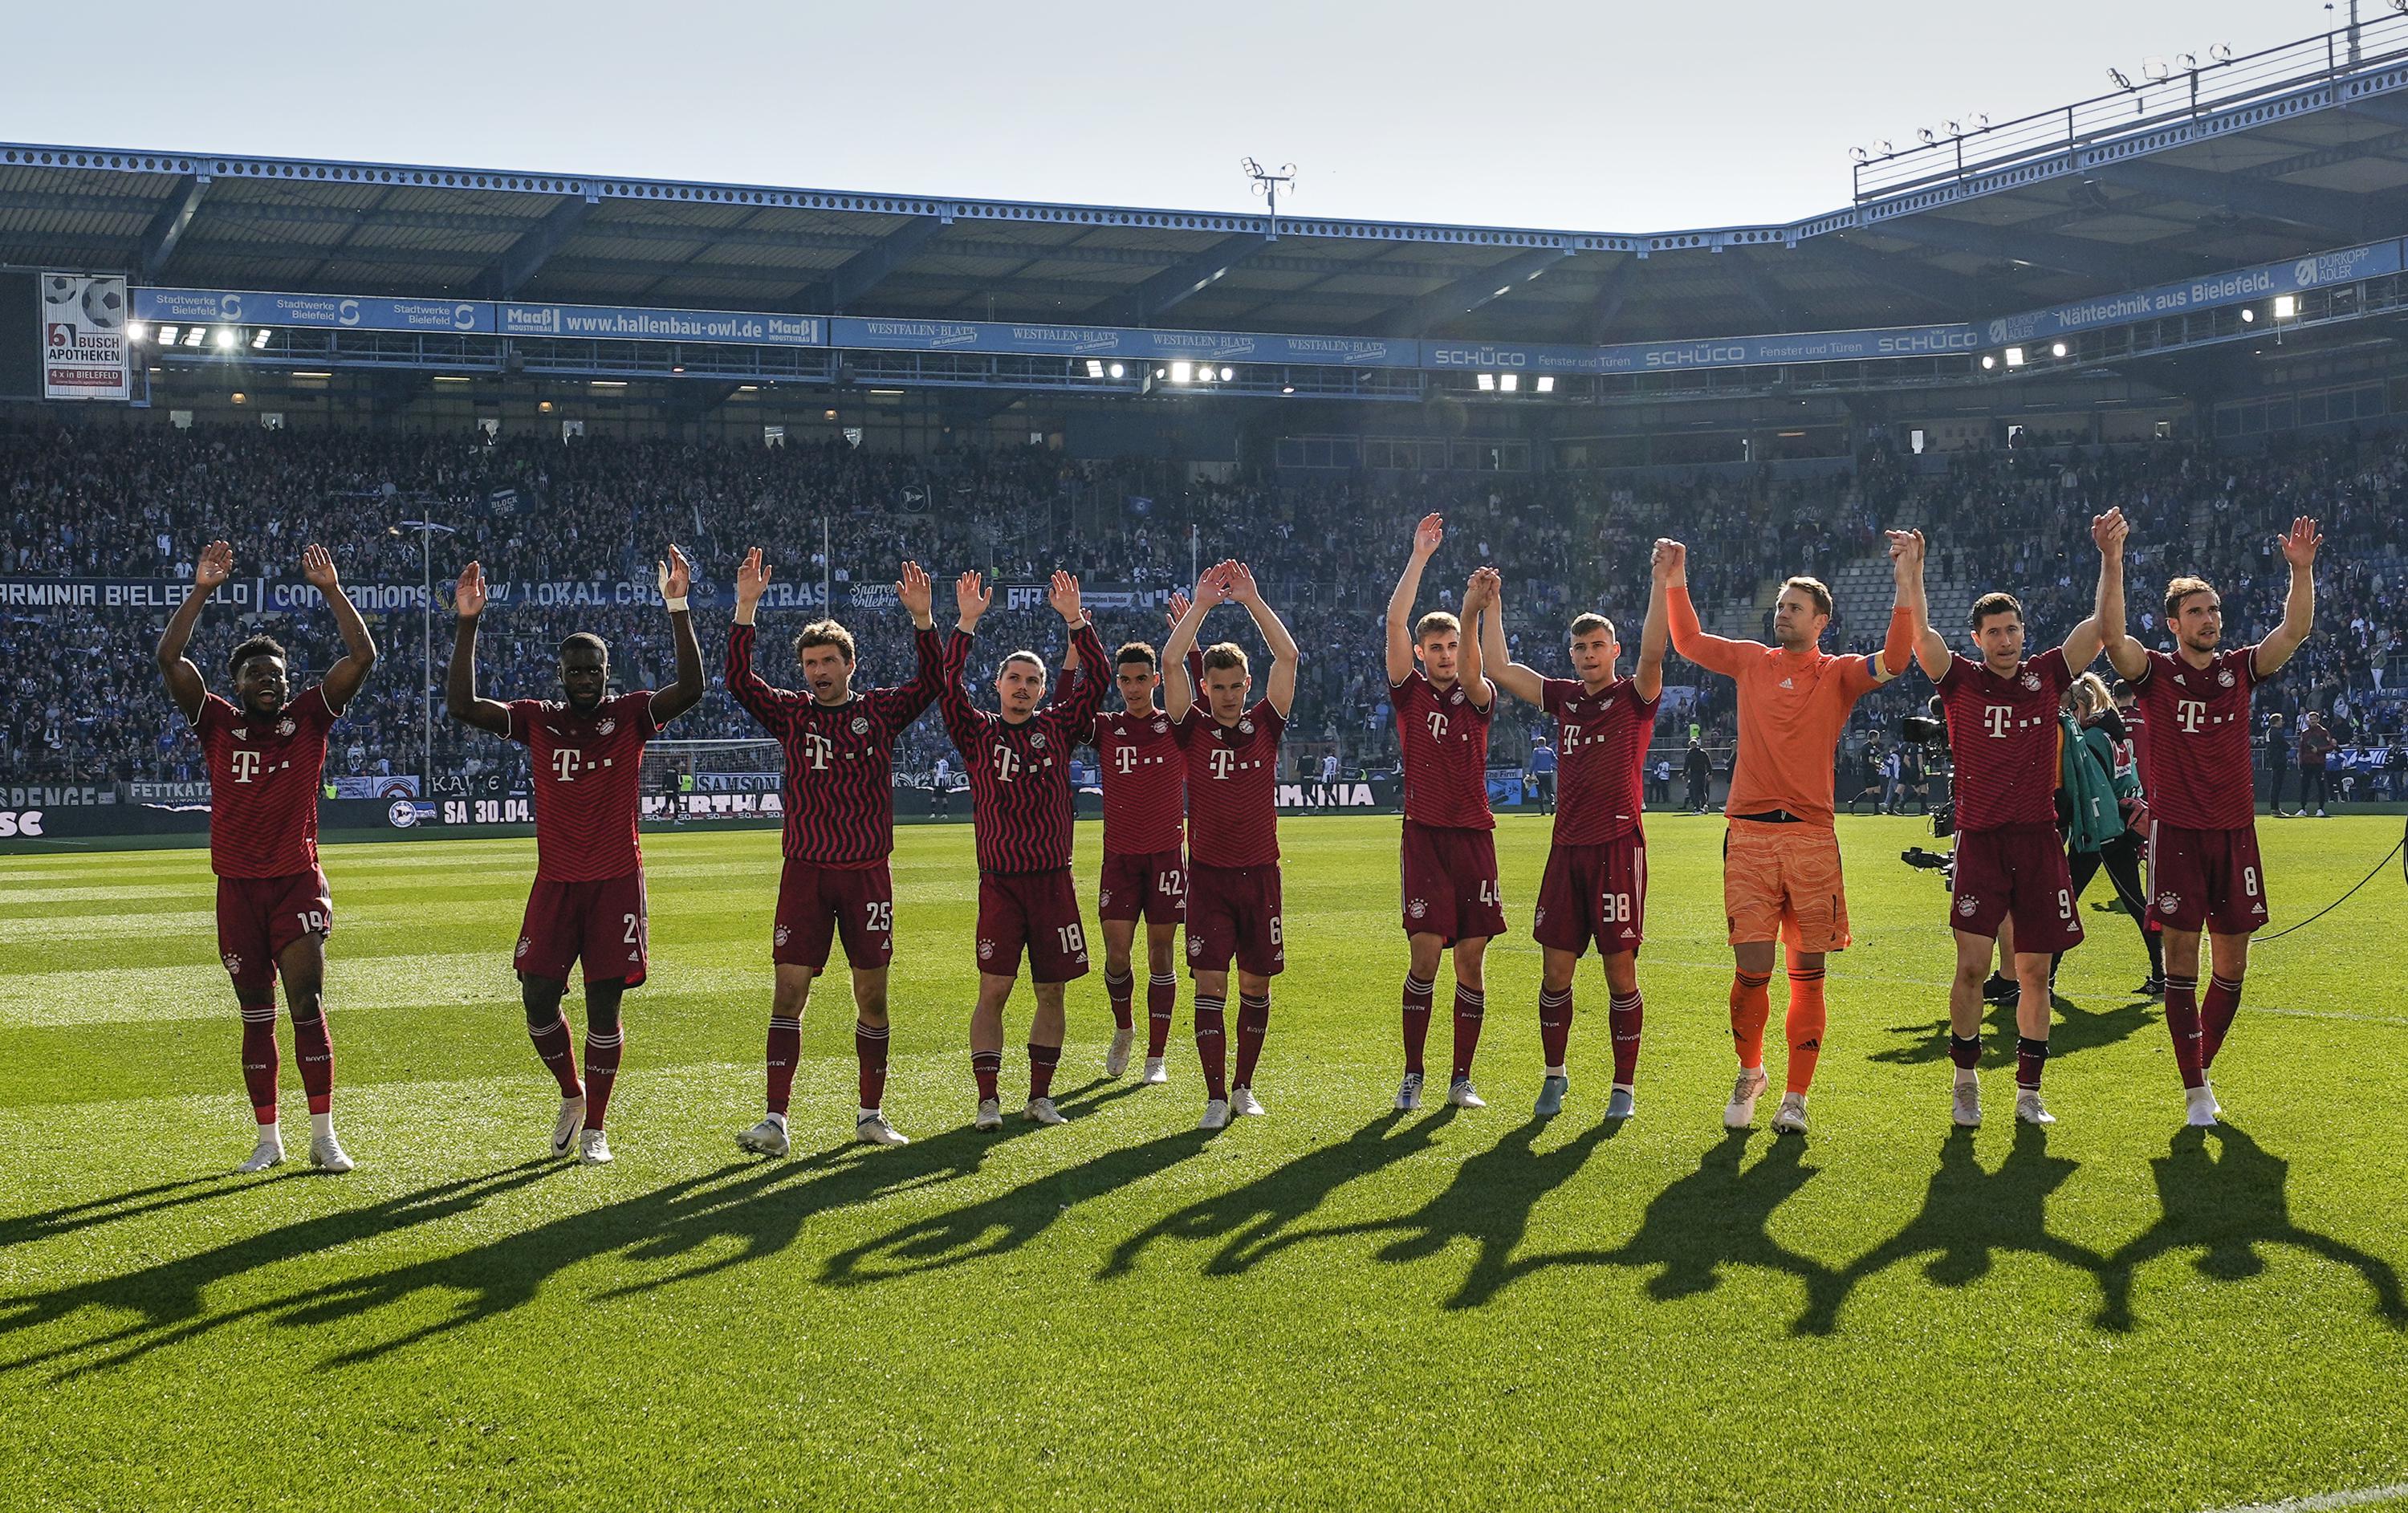 SPIELTAG: Bayern, PSG wollen Titel gewinnen;  Stadt spielen Watford